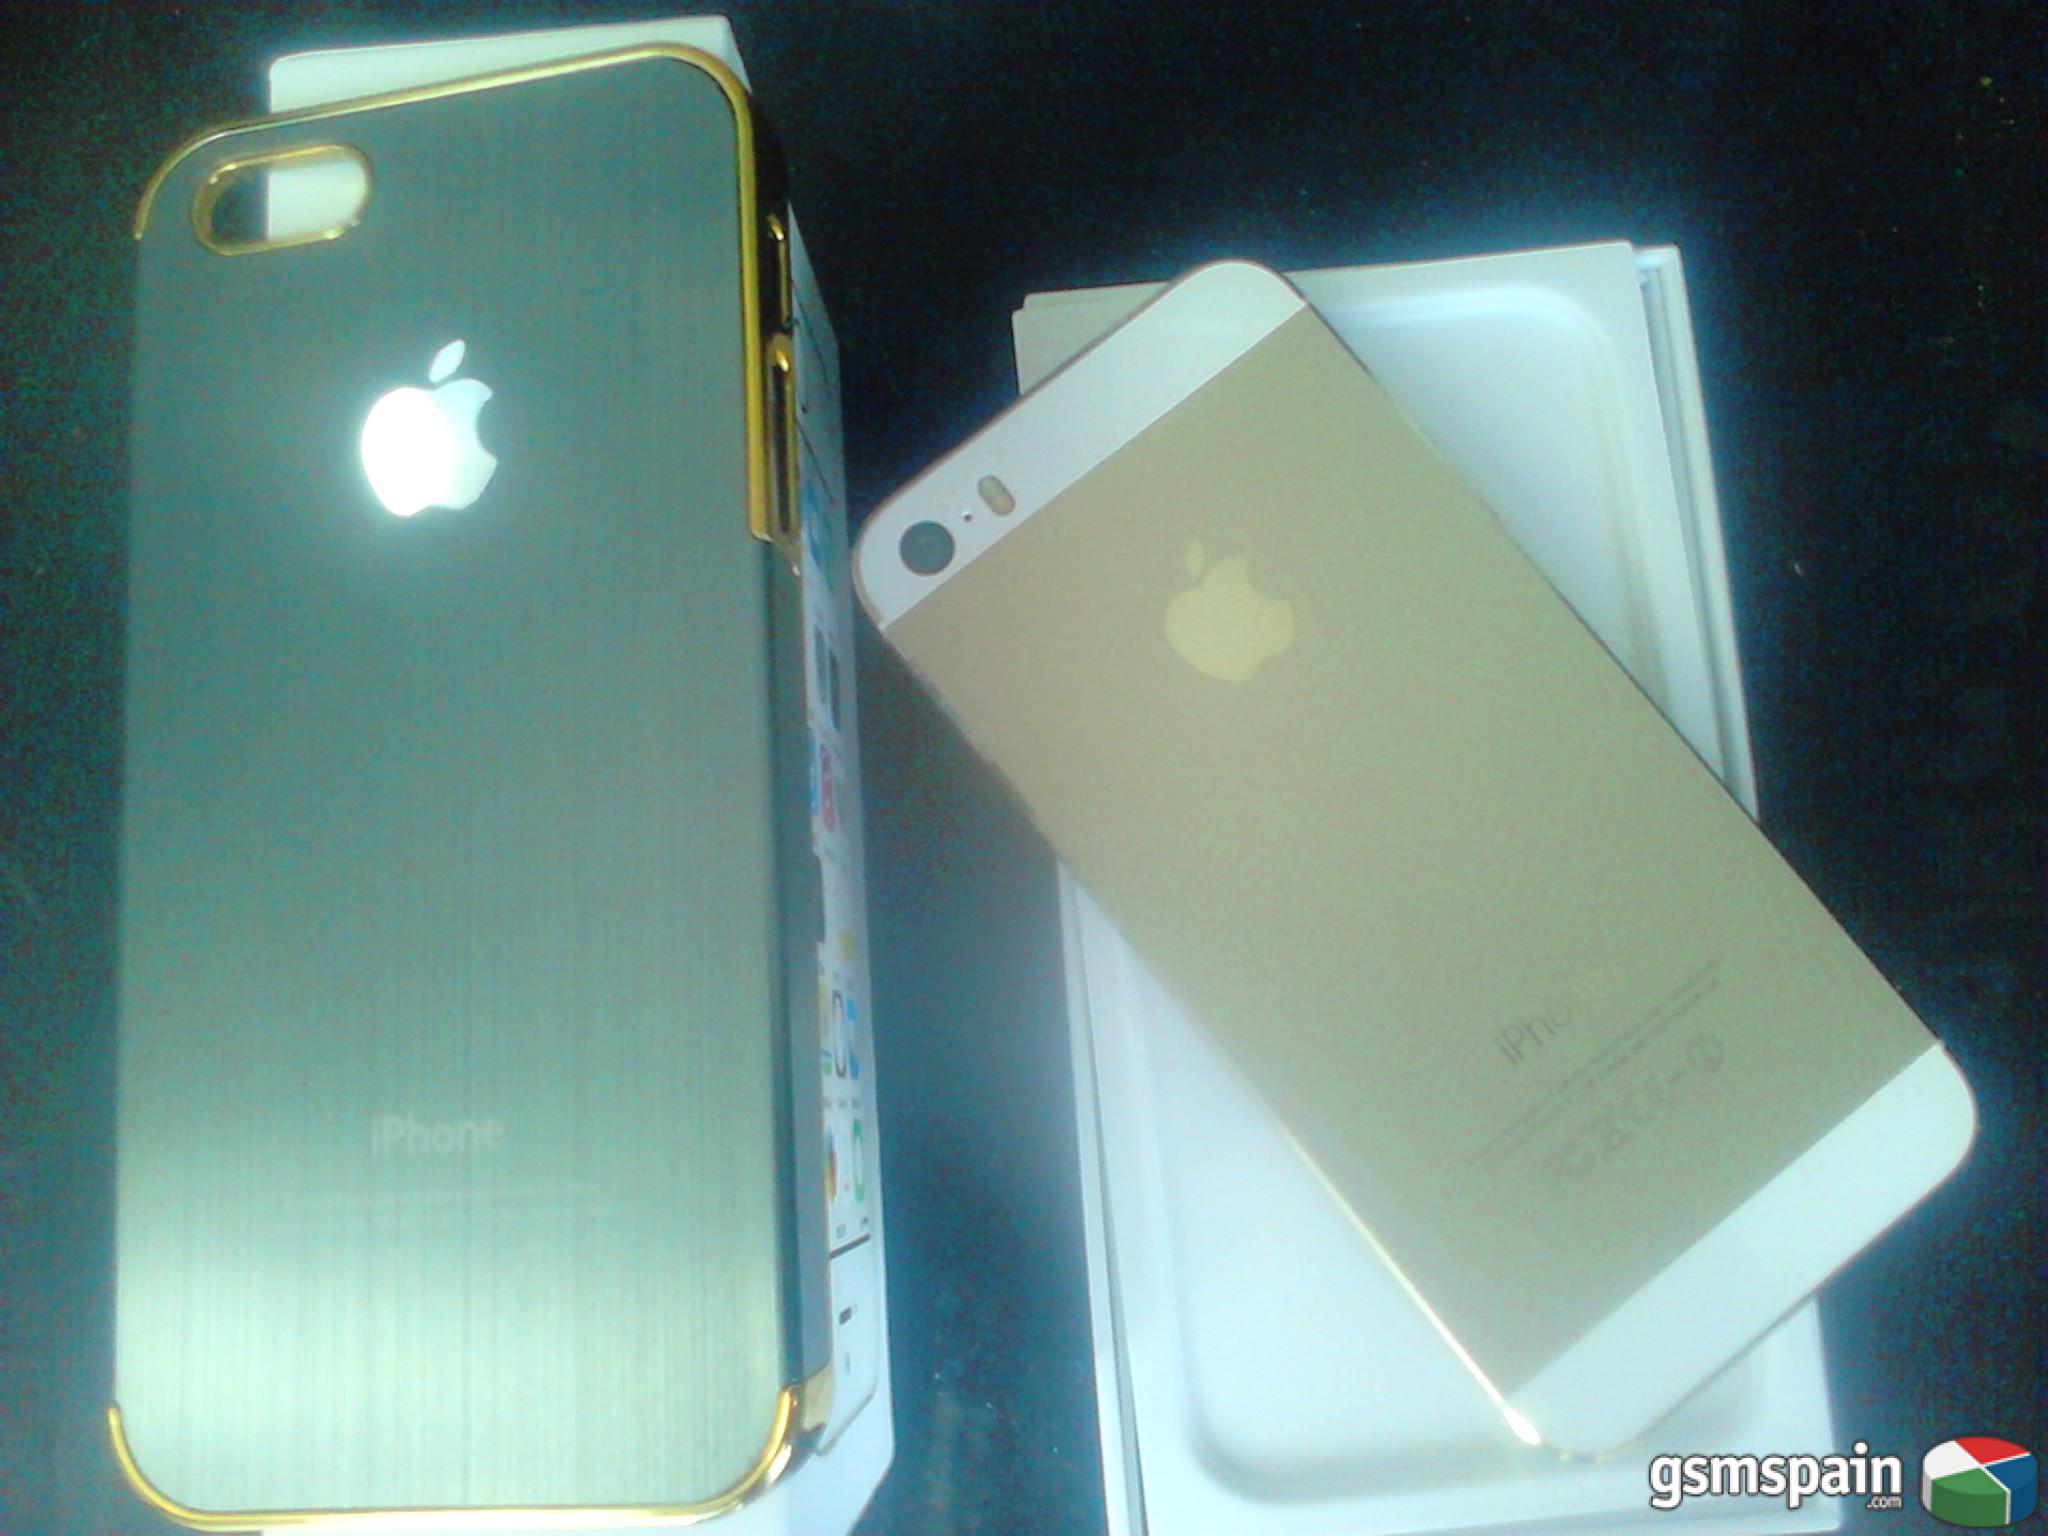 [COMPRO] Compro iphone 5s dorado